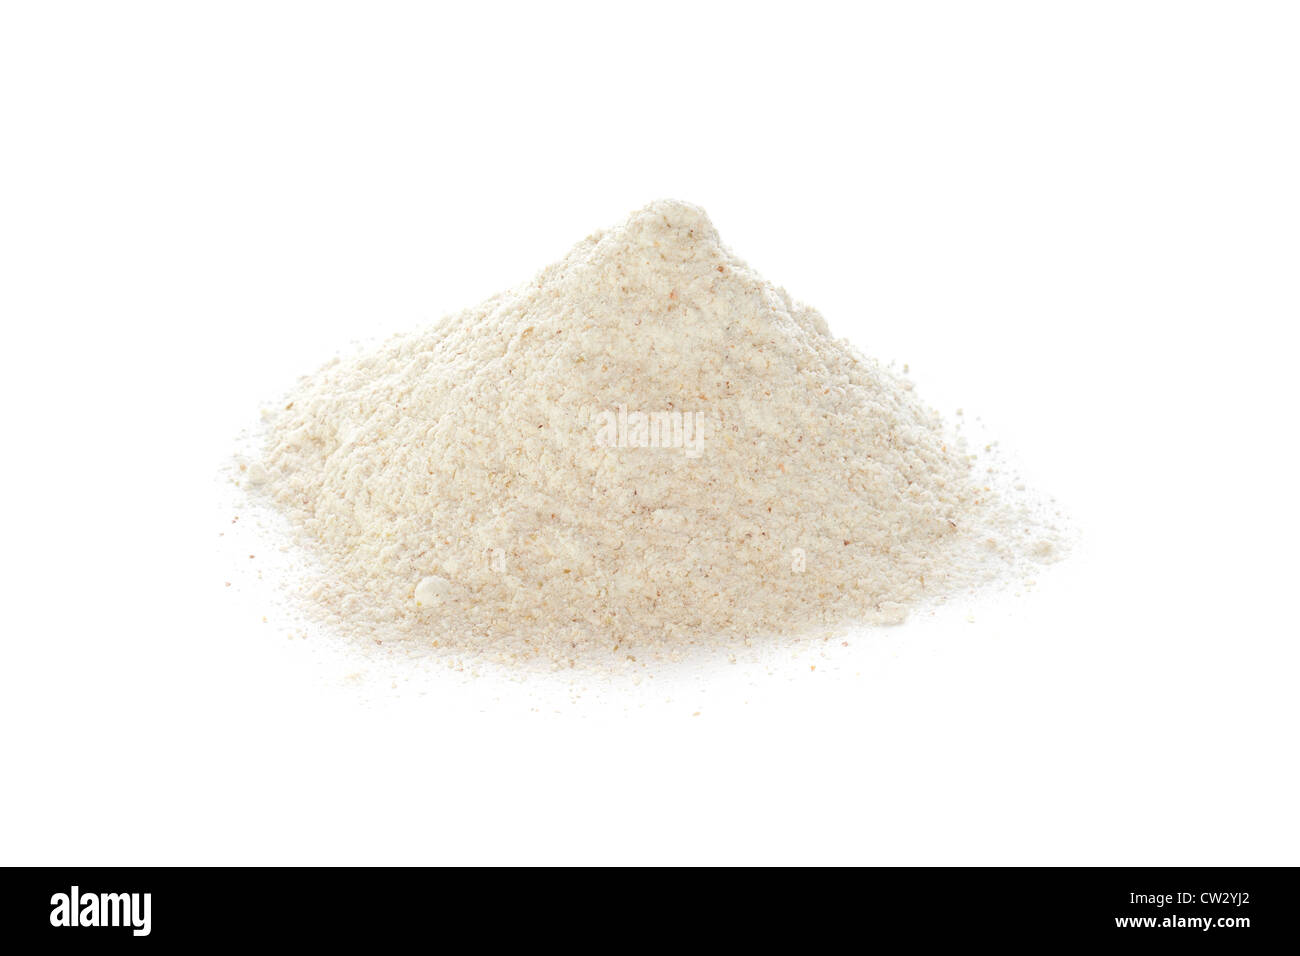 A pile of organic buckwheat flour on white. Stock Photo